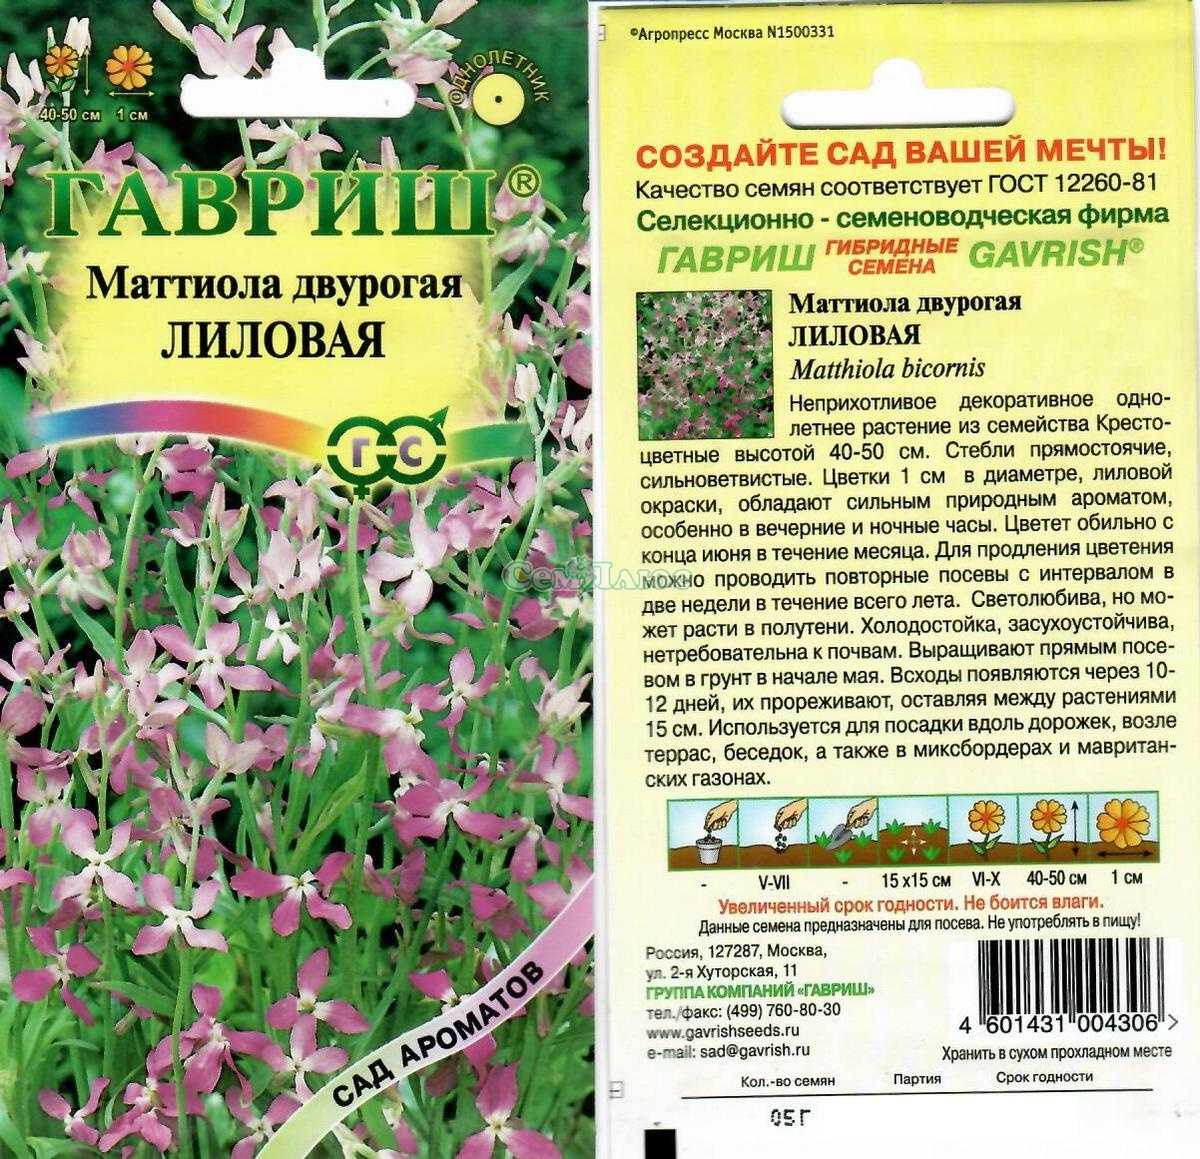 Левкой (маттиола двурогая): выращивание из семян, когда сажать в домашних условиях